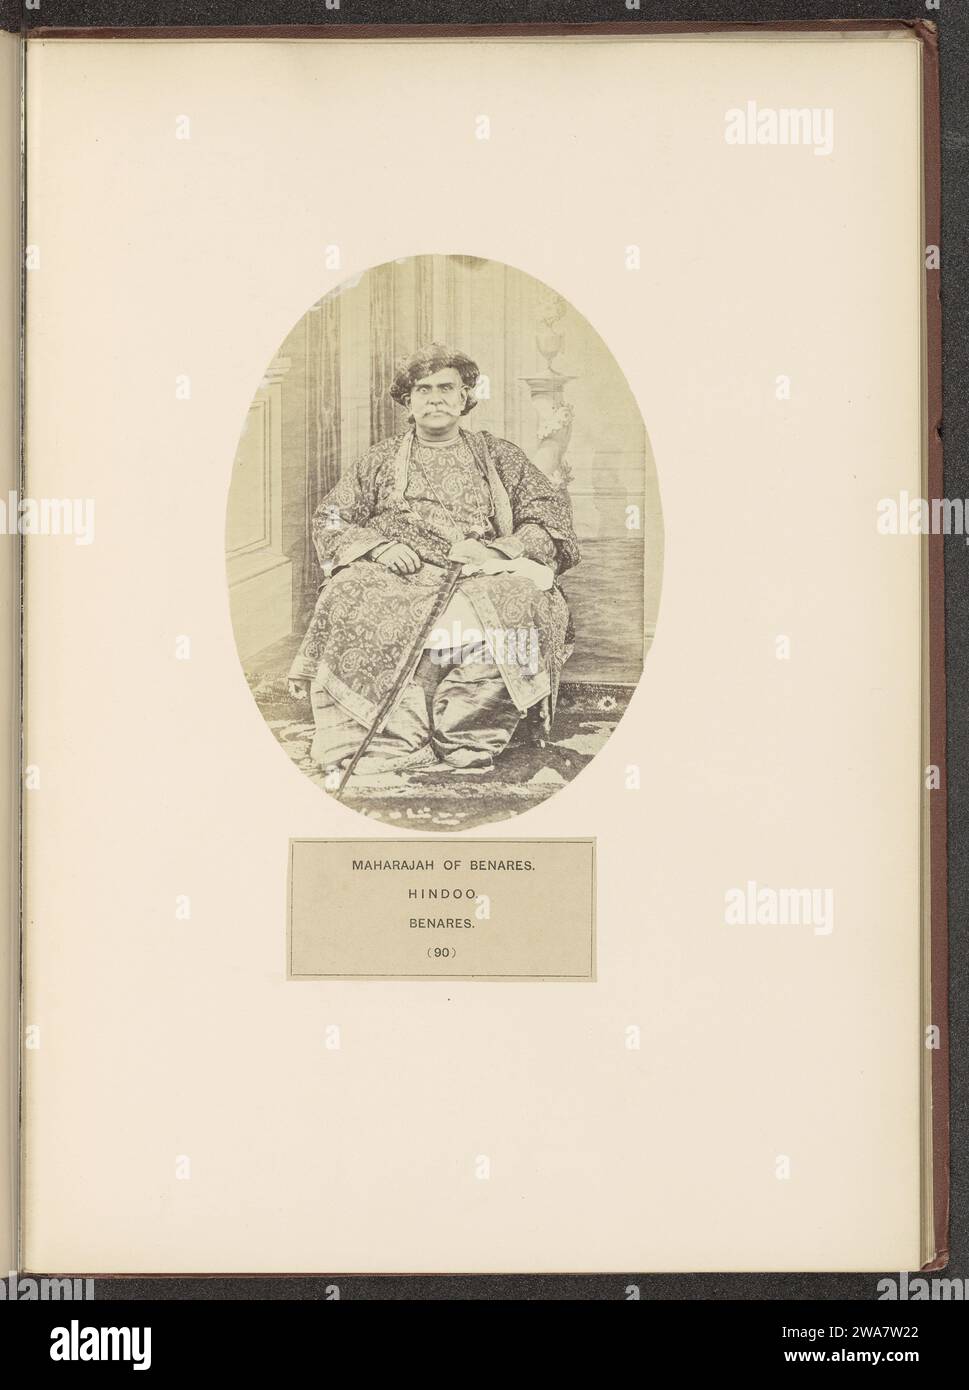 Portrait du Maharaja de Benares, c. 1858 - en 1868 ou avant la photographie Varanasi est également connu sous le nom de Benares. Varanasi support photographique albumen print races humaines ; peuples ; nationalités. souverain, souverain Banque D'Images